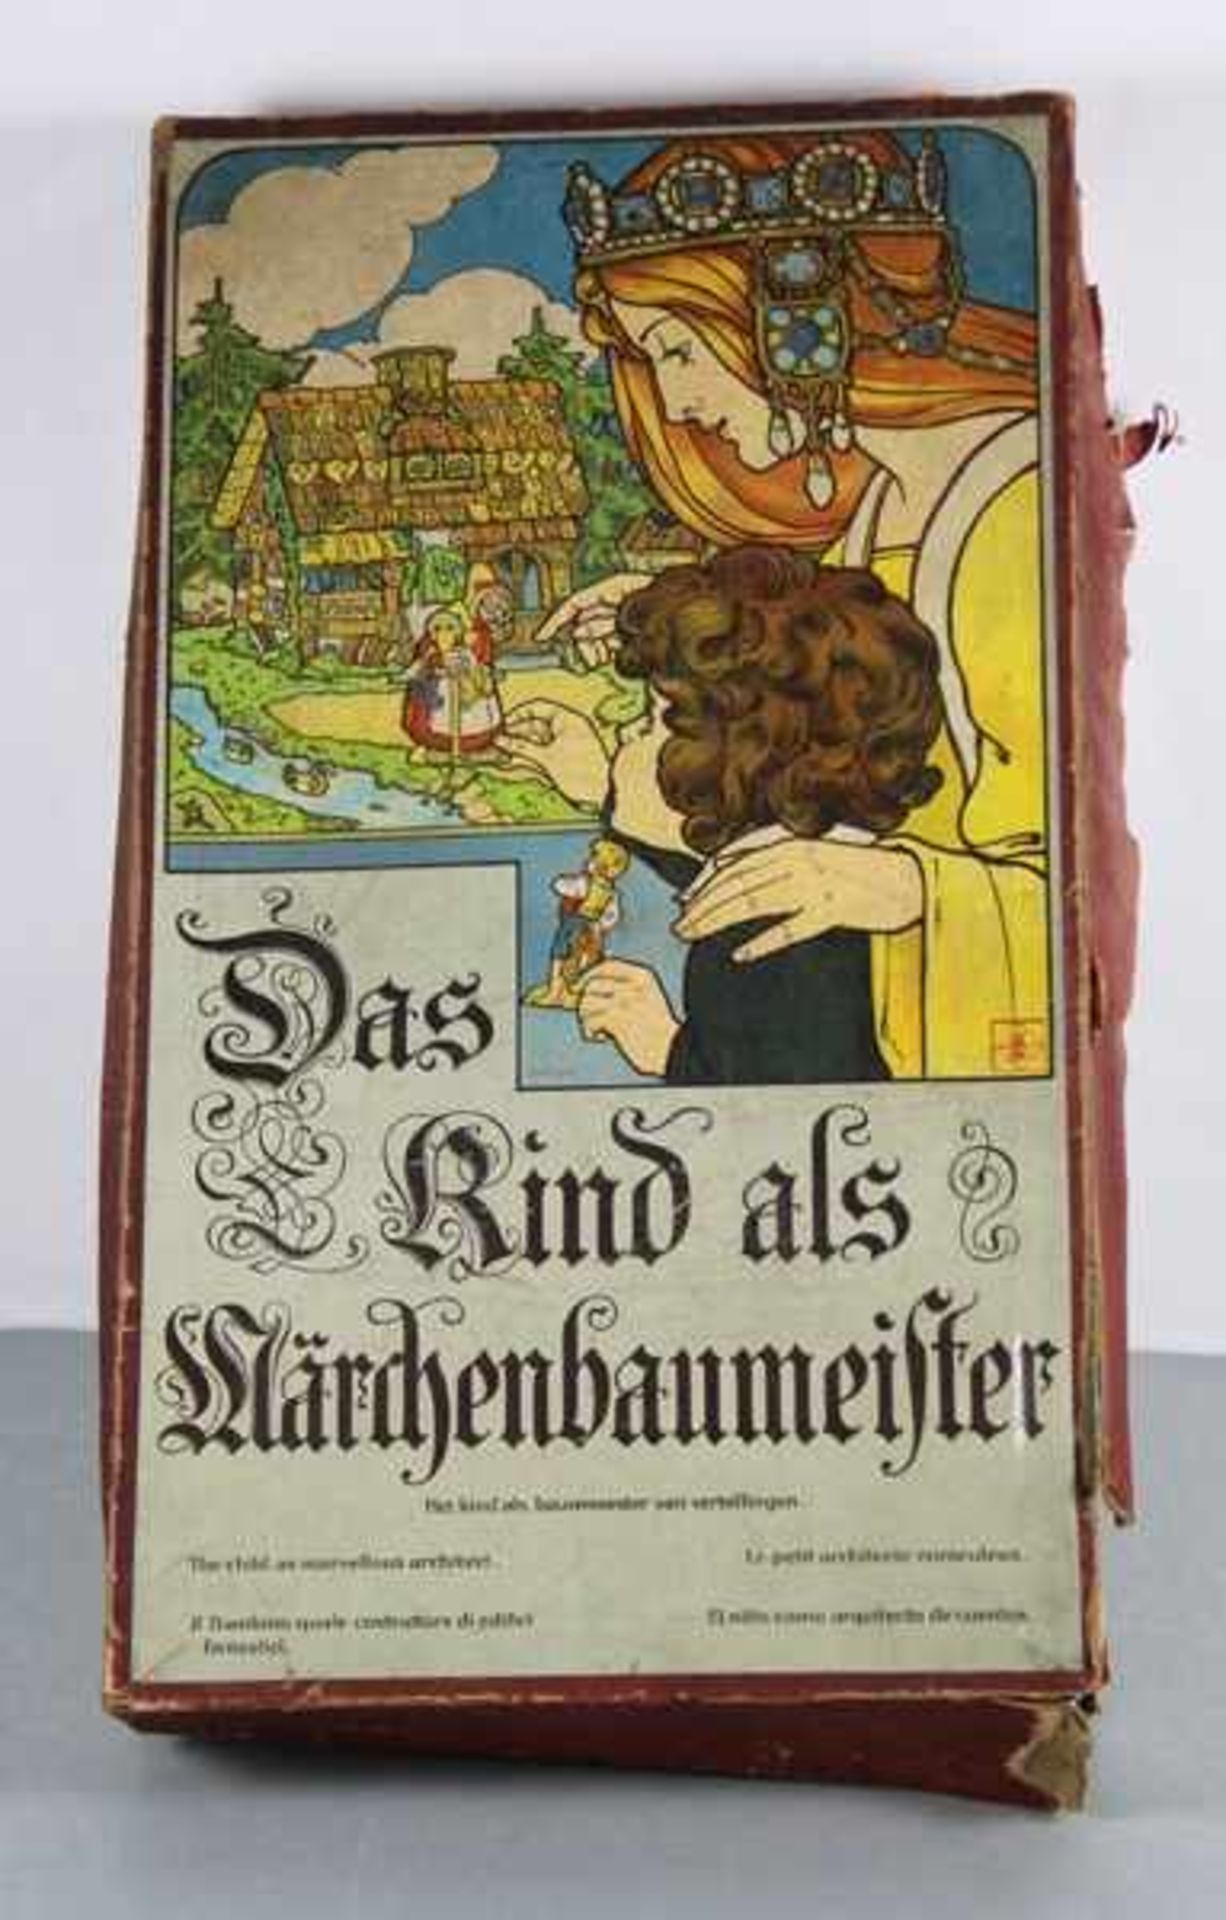 Märchen-Baukastenum 1900, Müller & Freyer, Das Kind als Märchenbaumeister, Würfel-Steckspiel mit